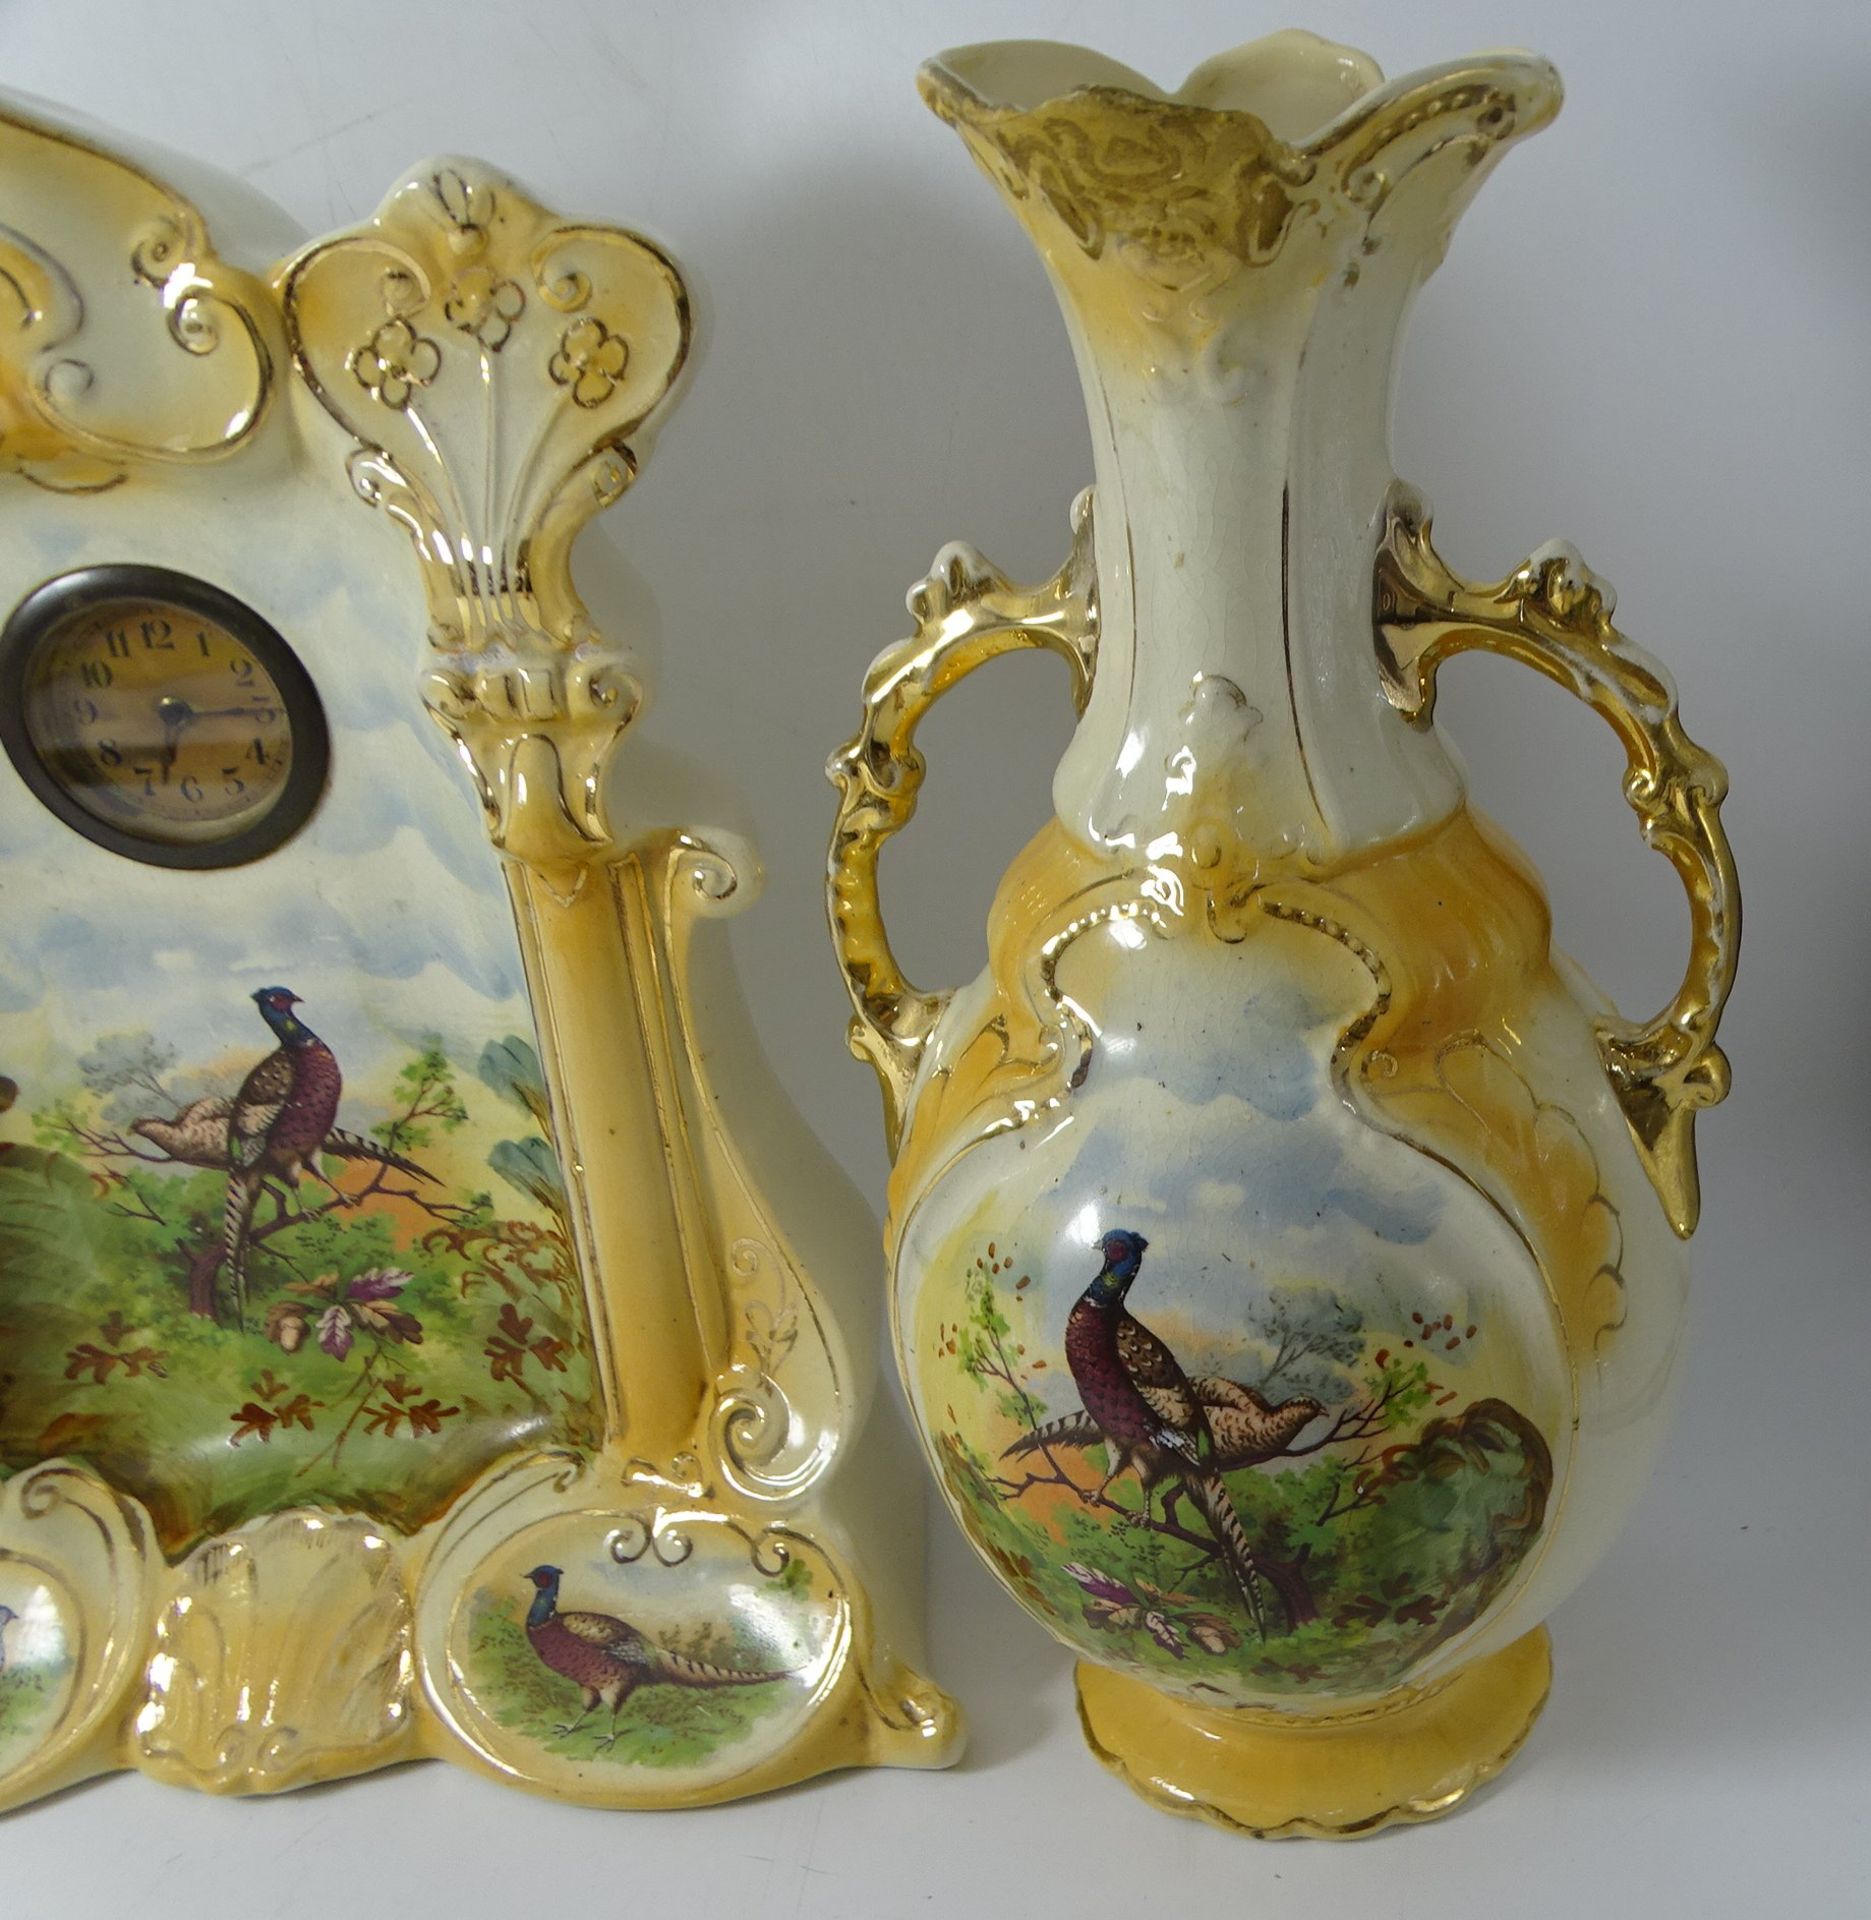 gr. Keramik Kaminuhr mit 2 Vasen als Beisteller, mechan. Weckerwerk läuft, 1 Vase tw. restauriert,  - Bild 4 aus 9